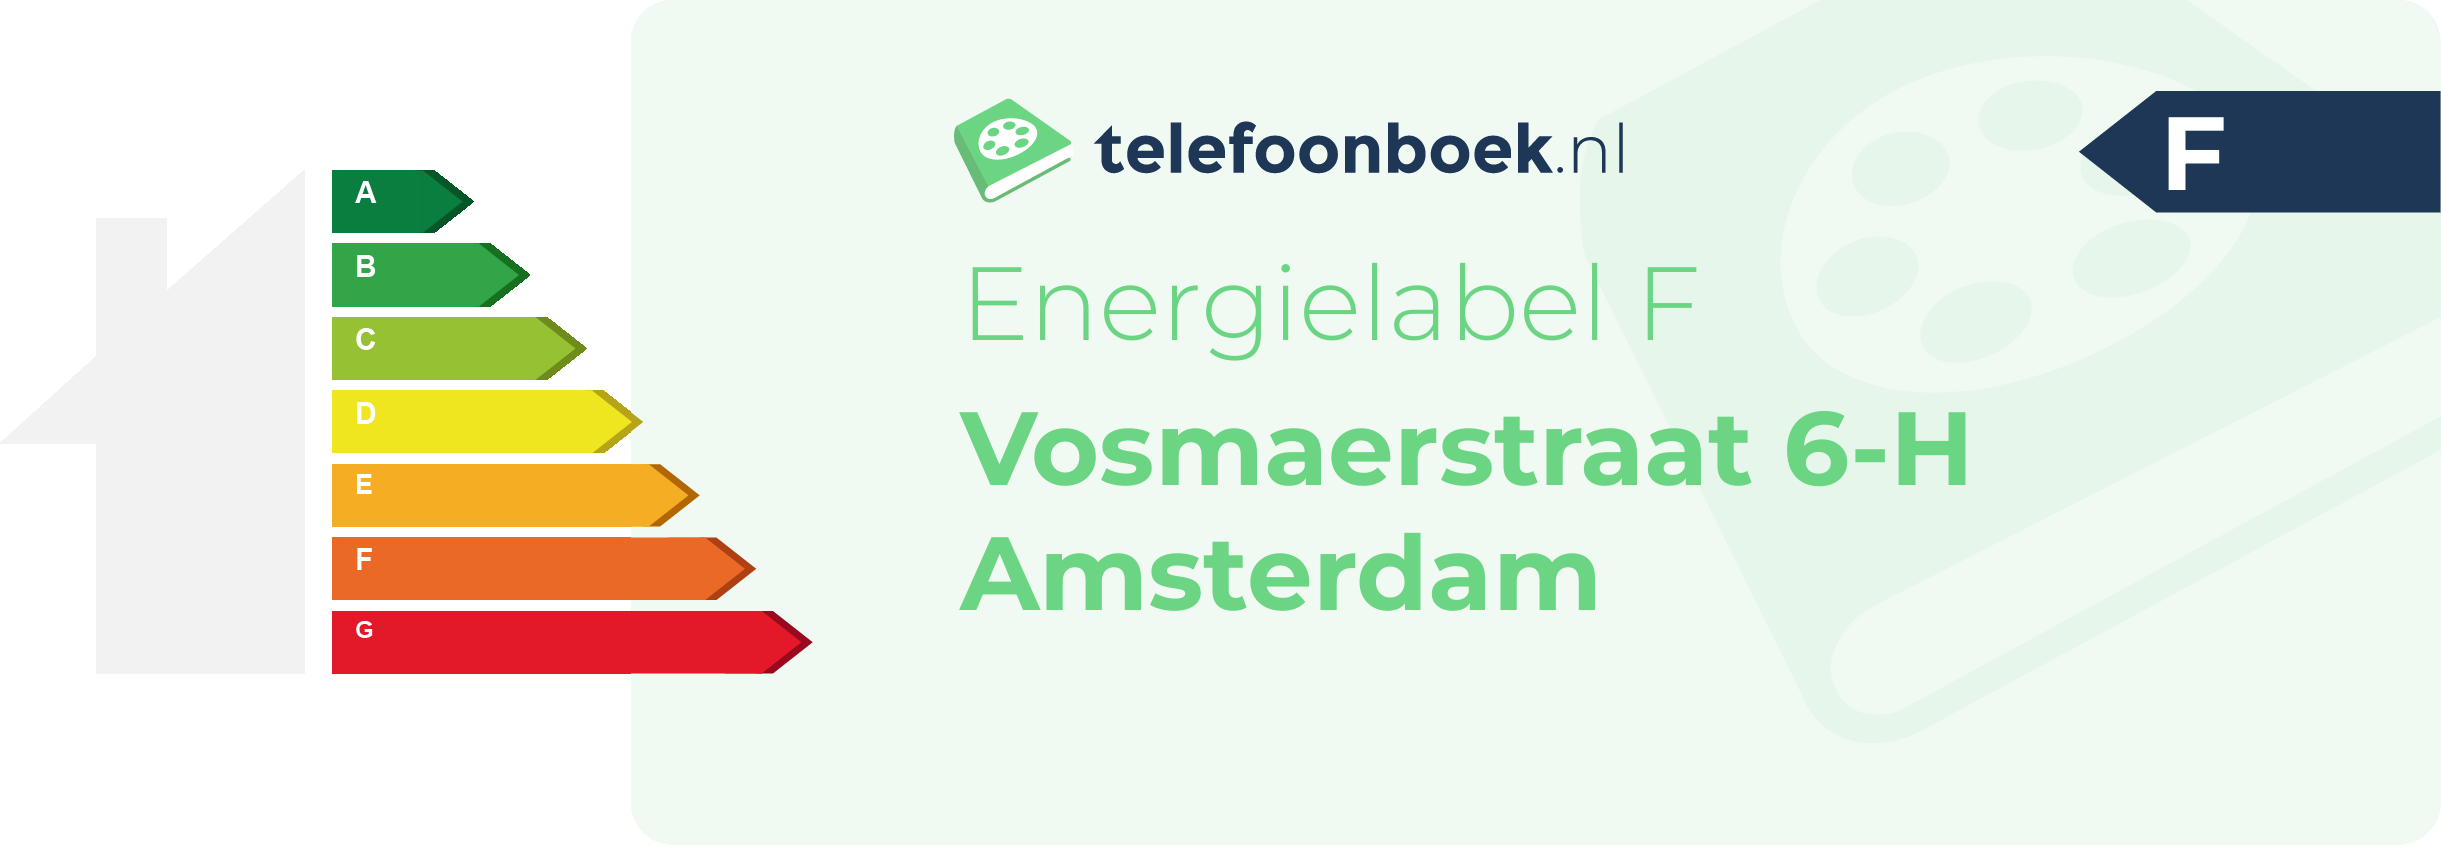 Energielabel Vosmaerstraat 6-H Amsterdam